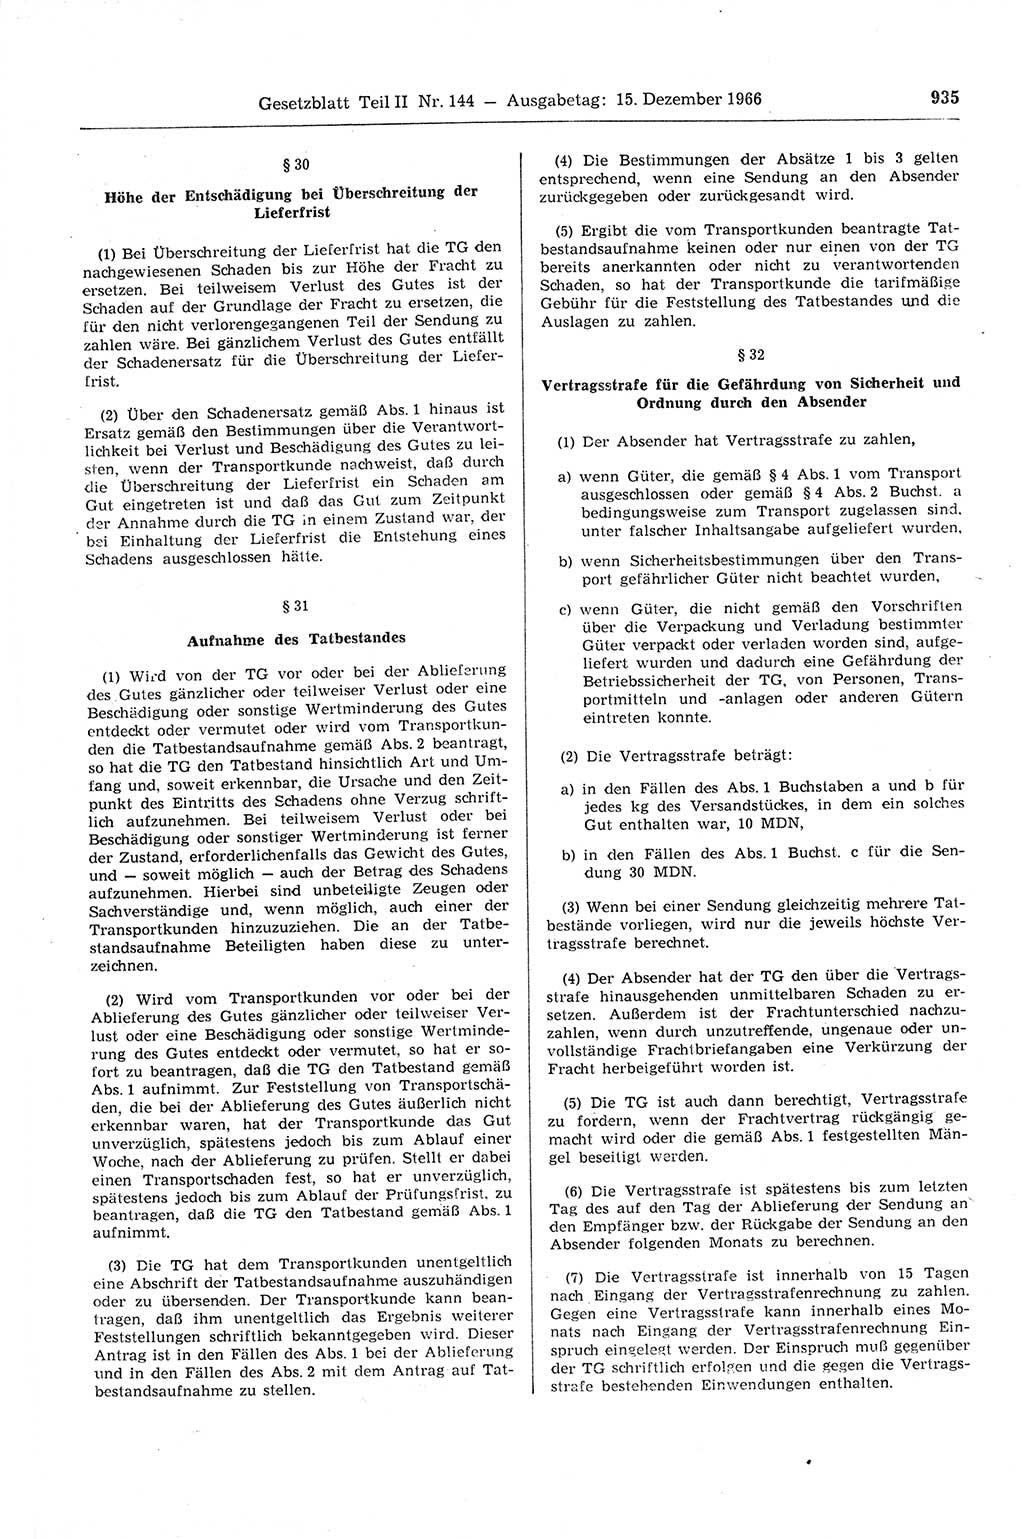 Gesetzblatt (GBl.) der Deutschen Demokratischen Republik (DDR) Teil ⅠⅠ 1966, Seite 935 (GBl. DDR ⅠⅠ 1966, S. 935)